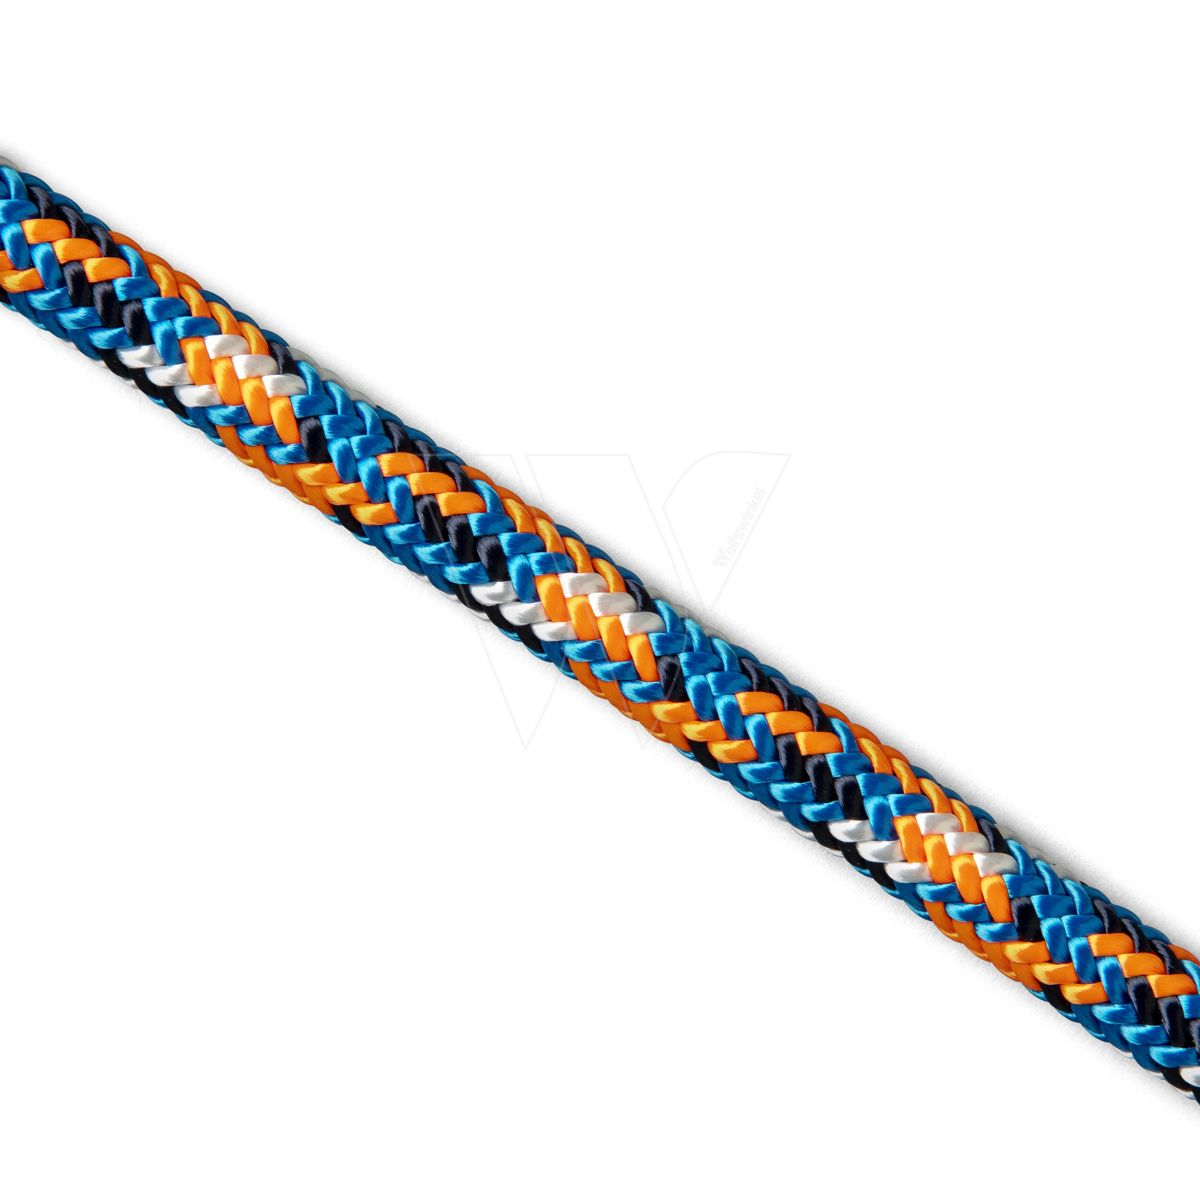 Husqvarna kletterseil 11,5mm 60m 1schlaufe blau